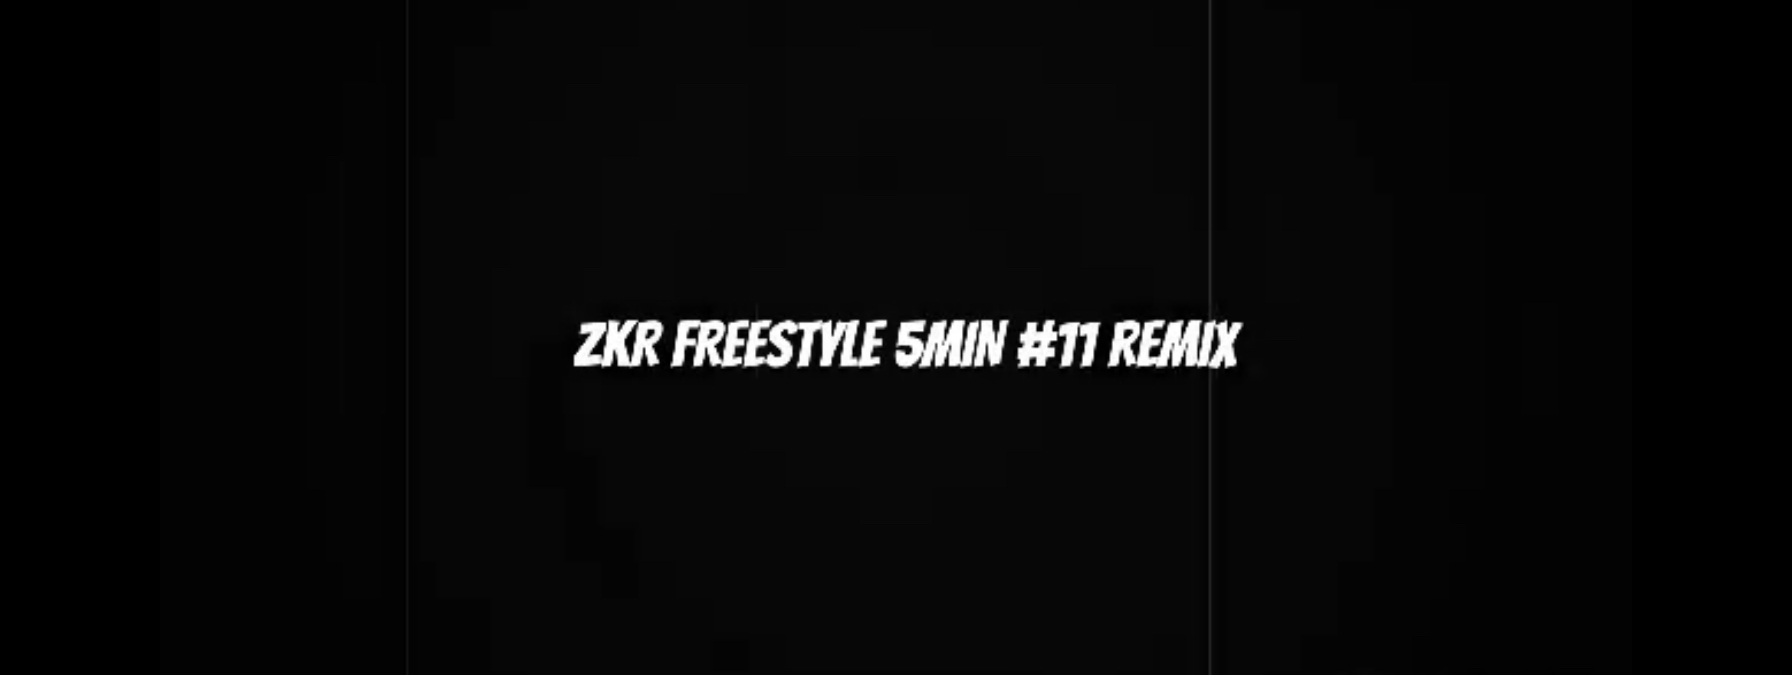 Zifa-Freestyle Zkr 5min #11 - Remix